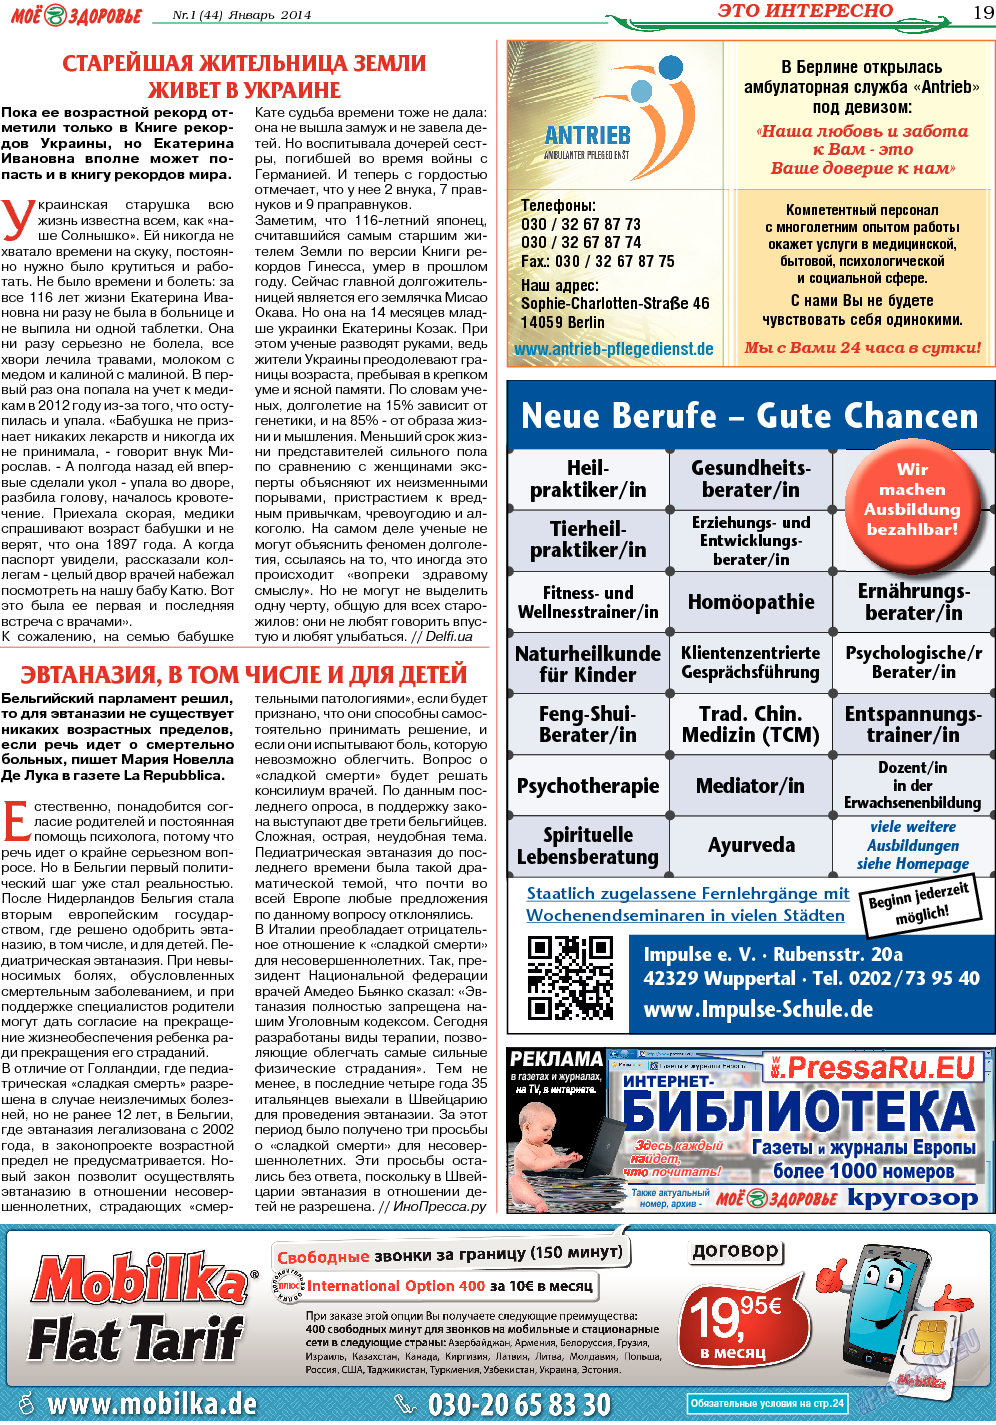 Кругозор, газета. 2014 №1 стр.19